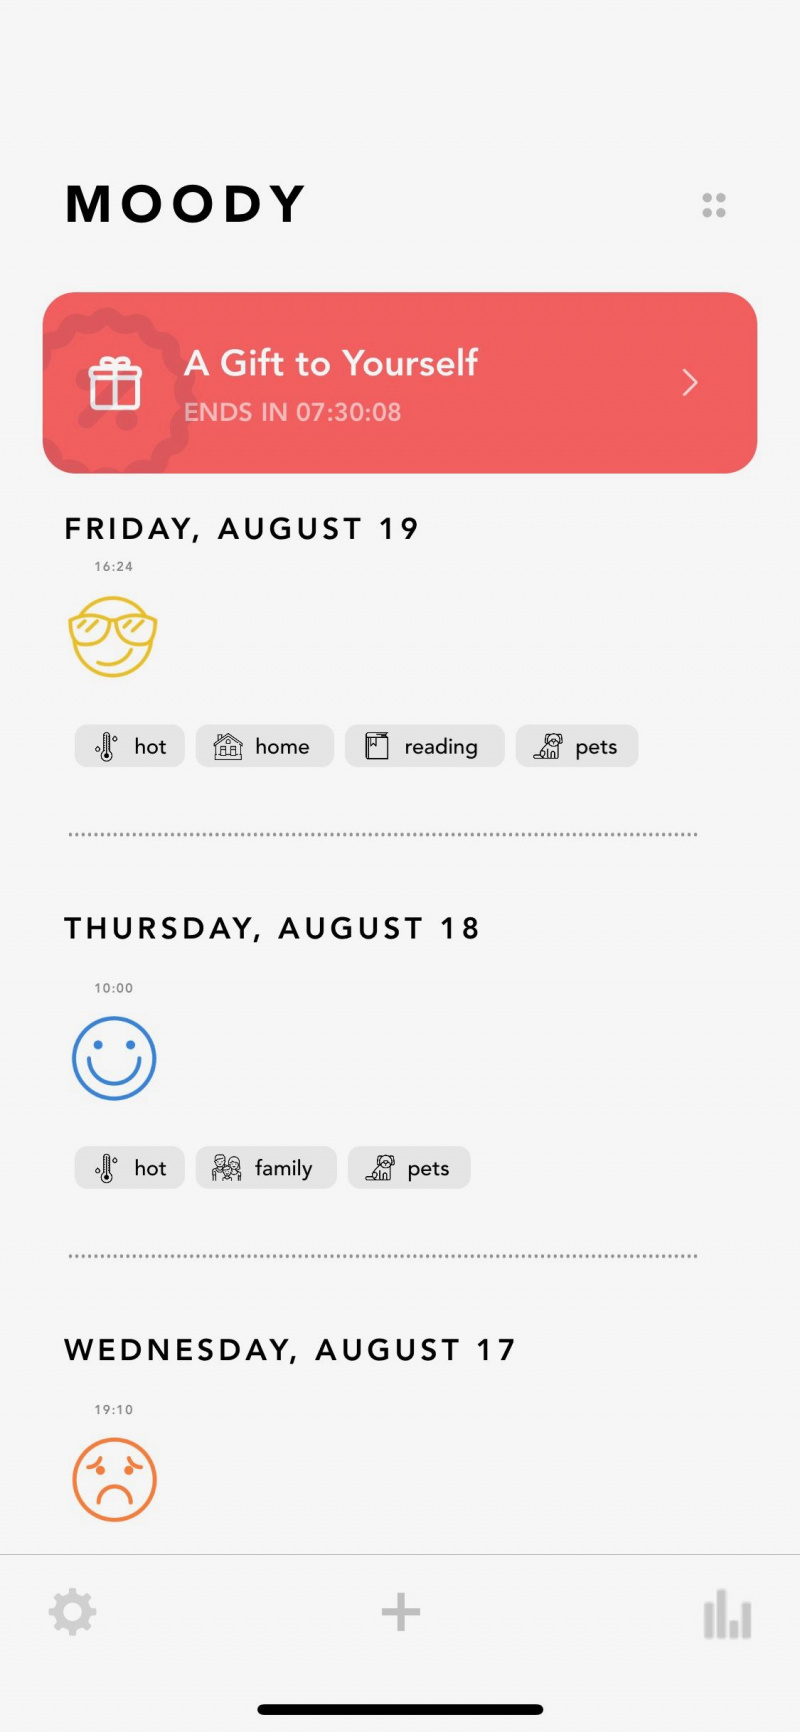   Snimka zaslona aplikacije Moody koja prikazuje praćenje raspoloženja